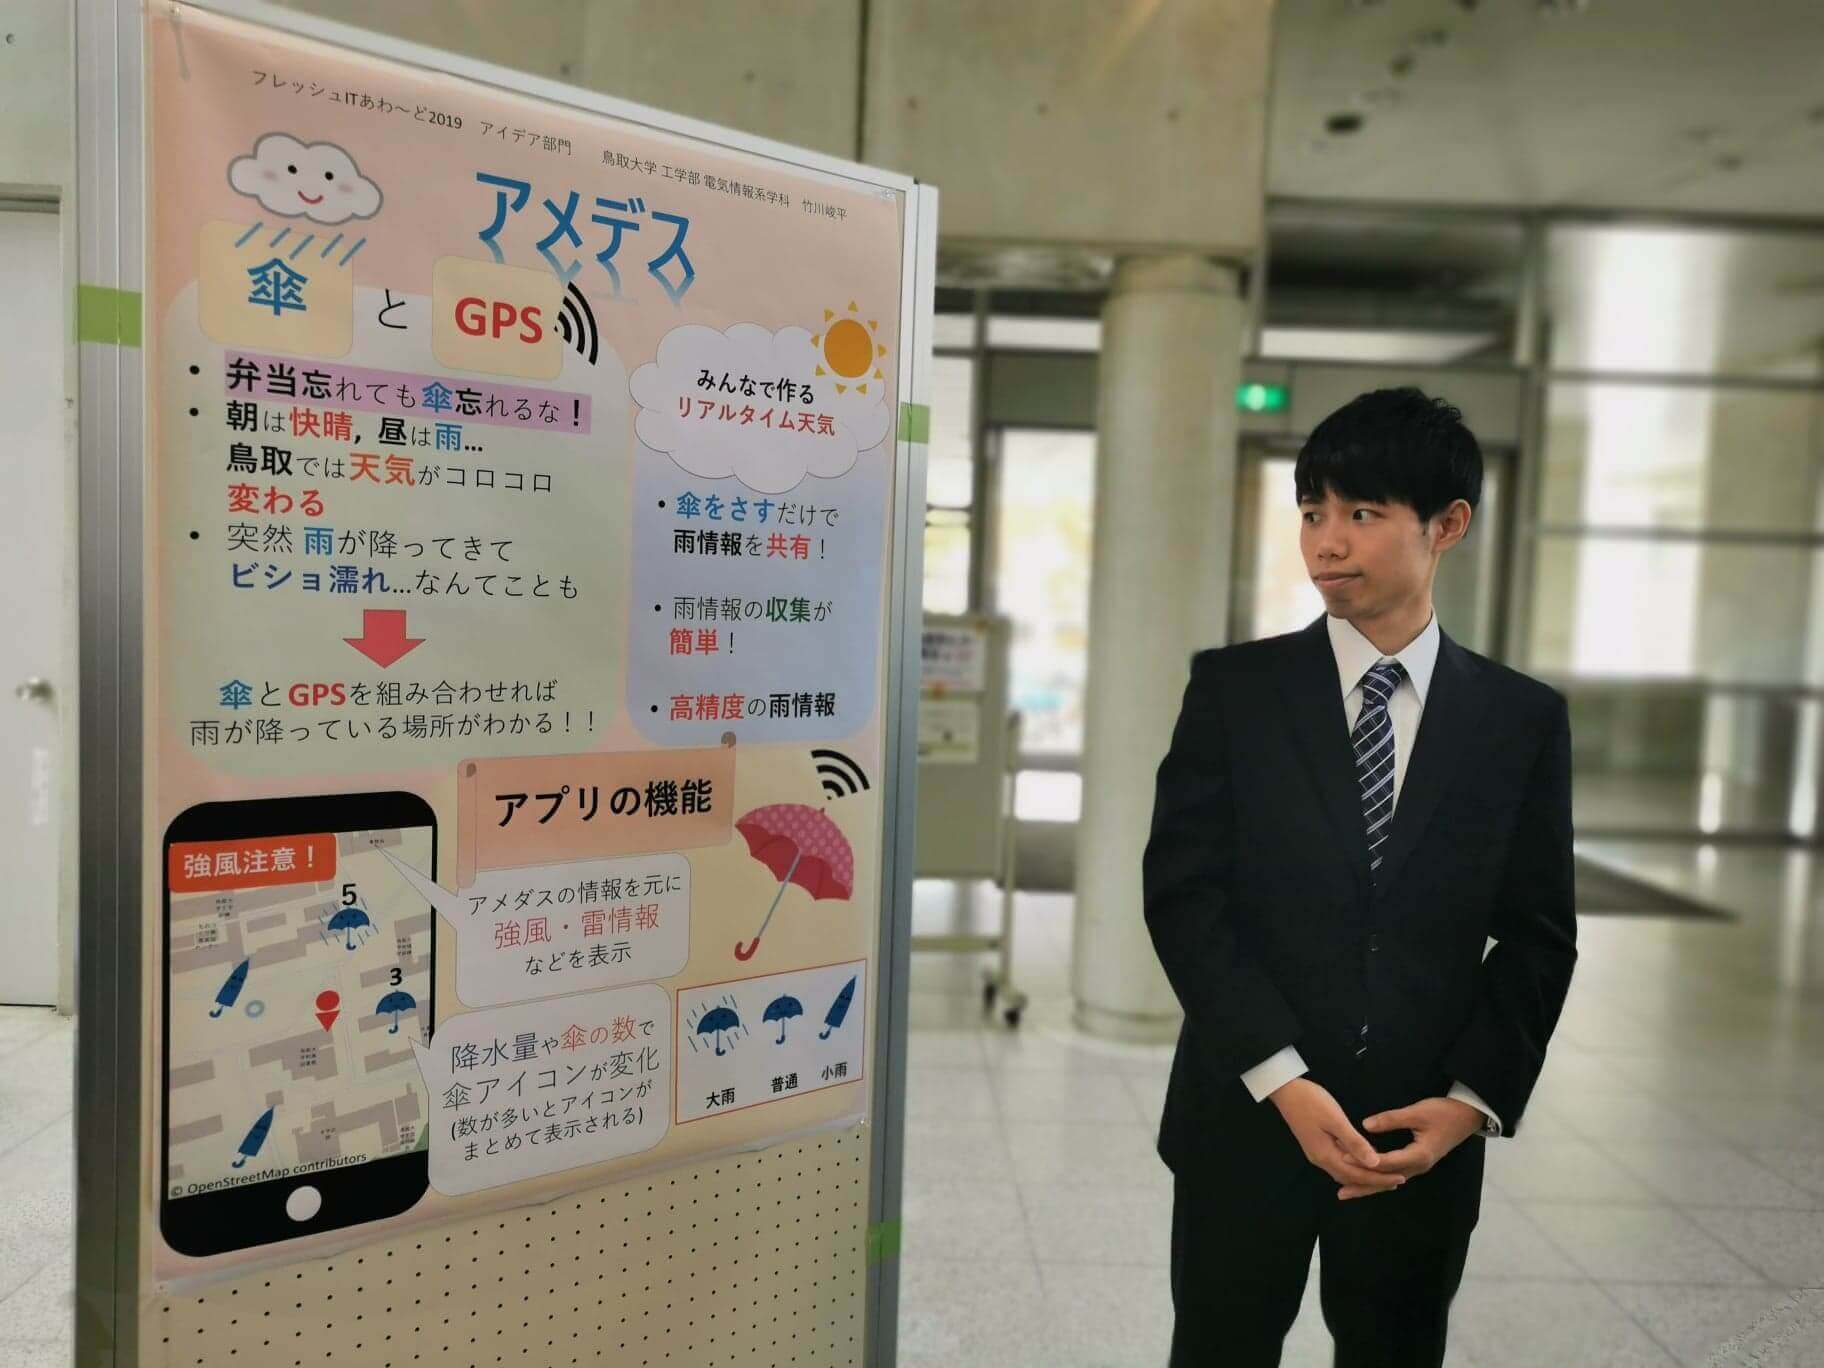 雨傘IoTのアイデアを披露した鳥取大学の竹川峻平さん